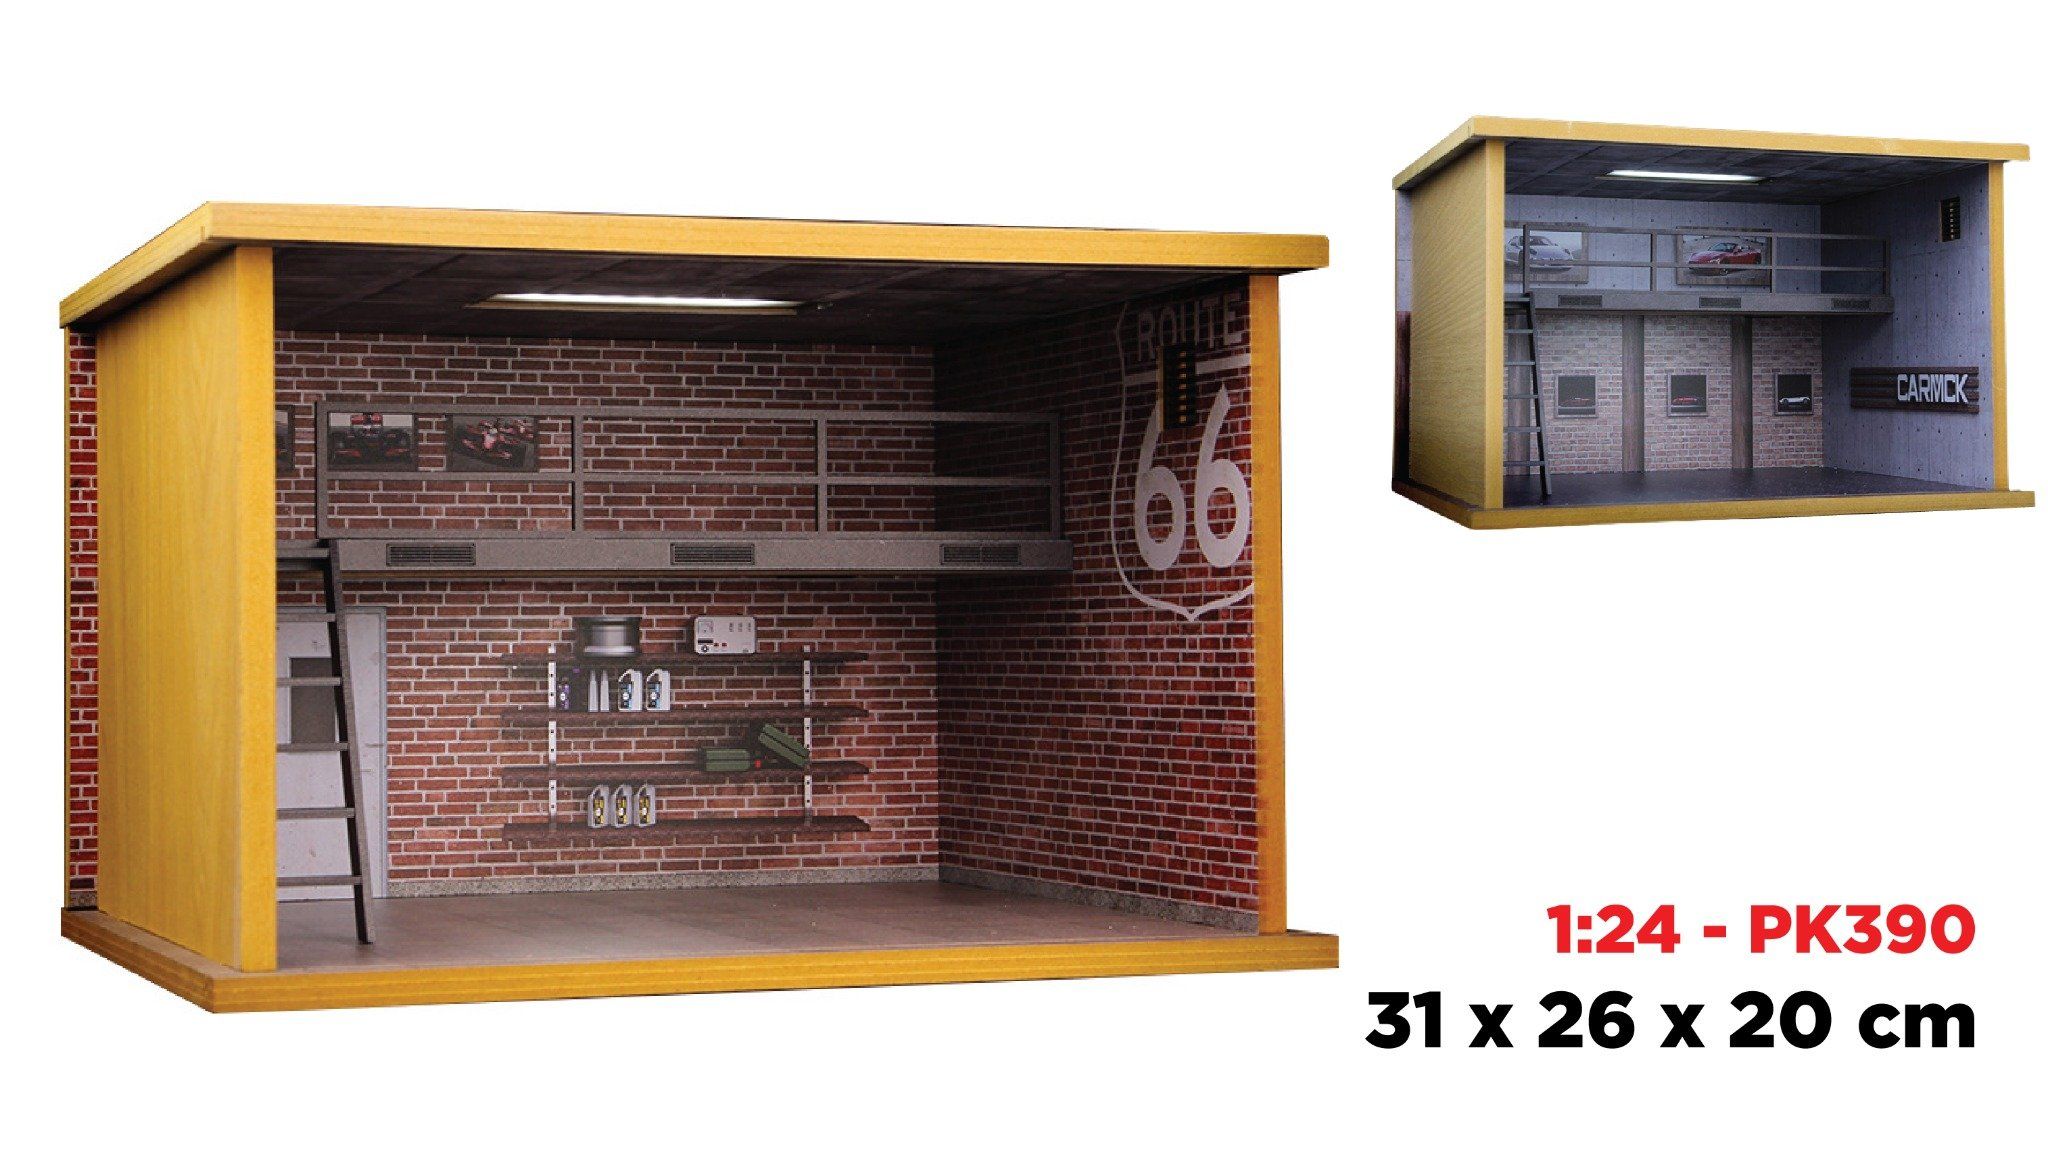  Hộp trưng bày gỗ 2 tầng garage xe tỉ lệ 1:24 - có đèn - có mica 31x26x20cm PK390 771240 